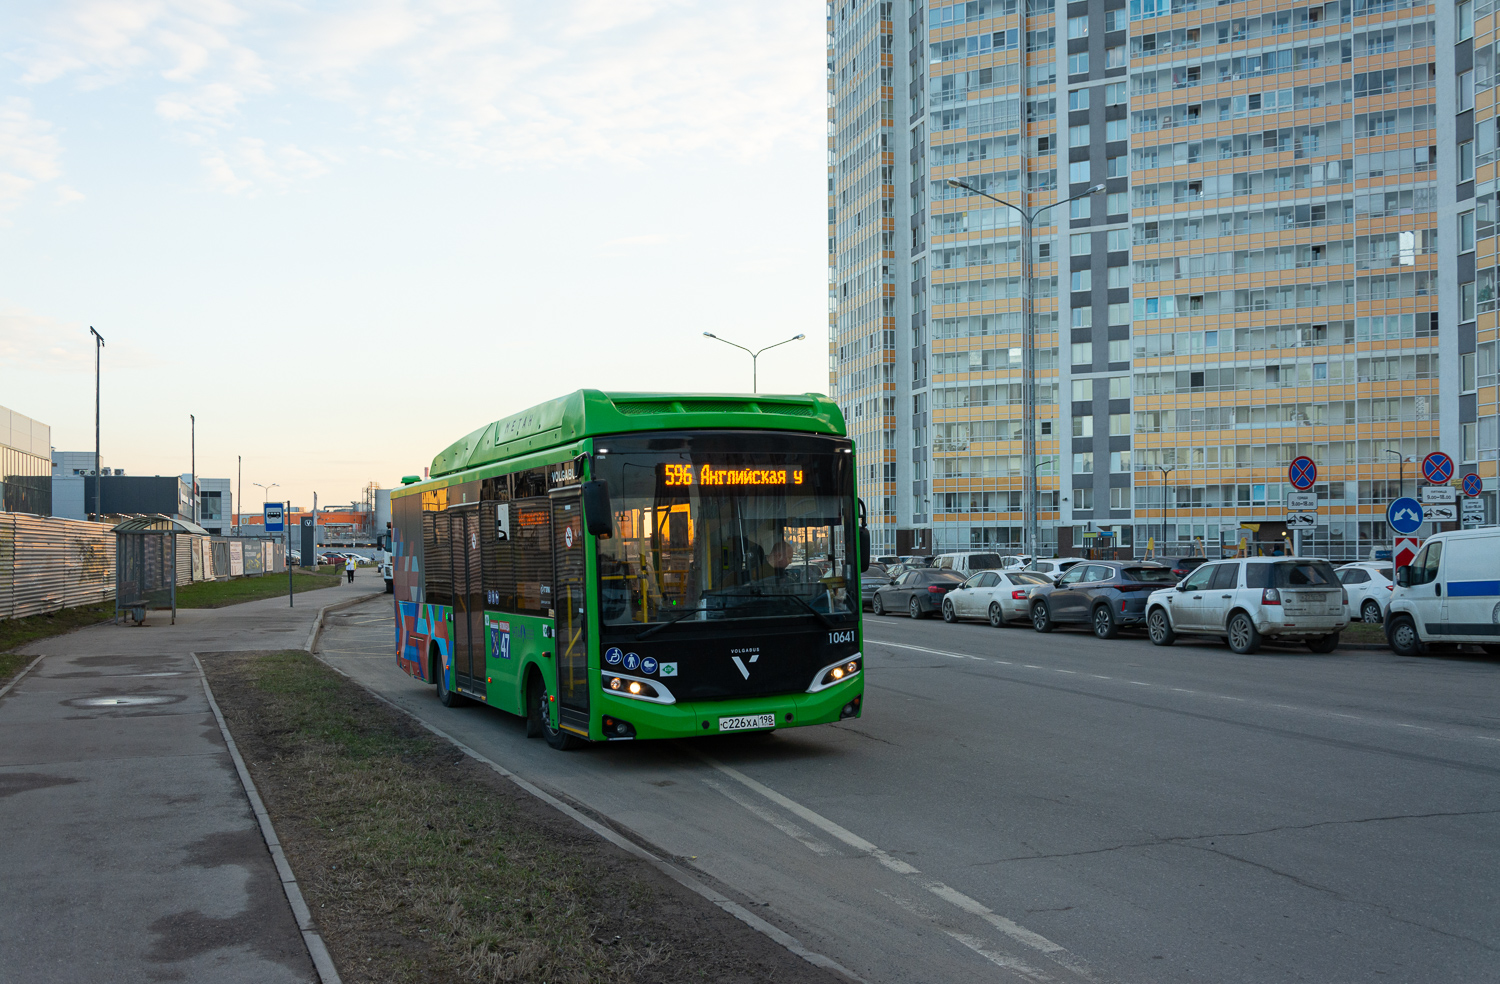 Saint Petersburg, Volgabus-4298.G4 (CNG) č. 10641